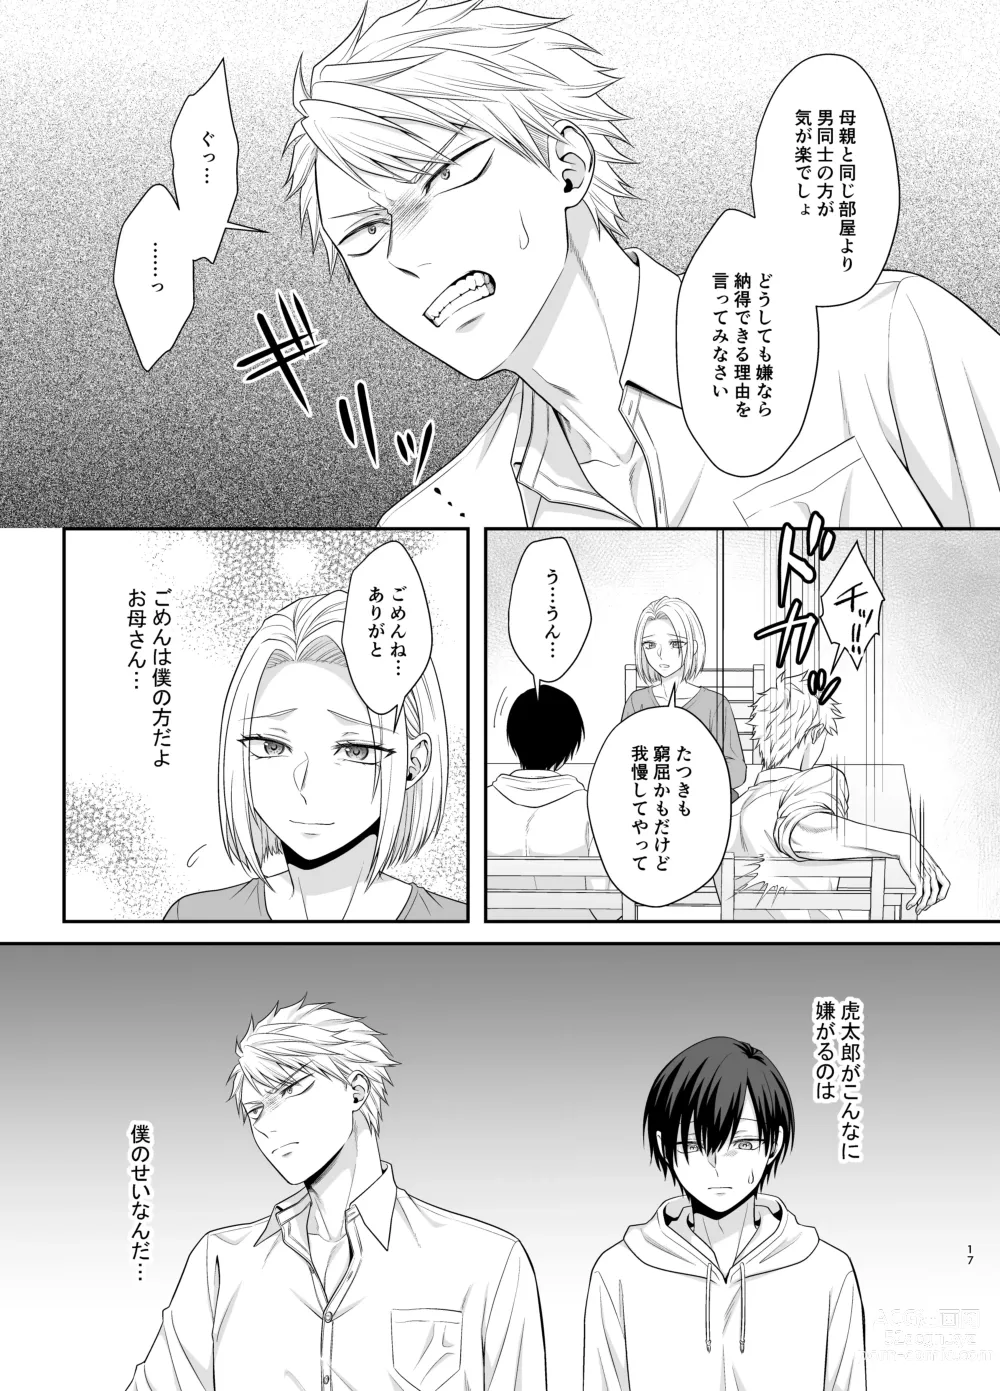 Page 17 of doujinshi Bokutachi, Kyoudai ni wa Mou Modorenai Mitai desu.